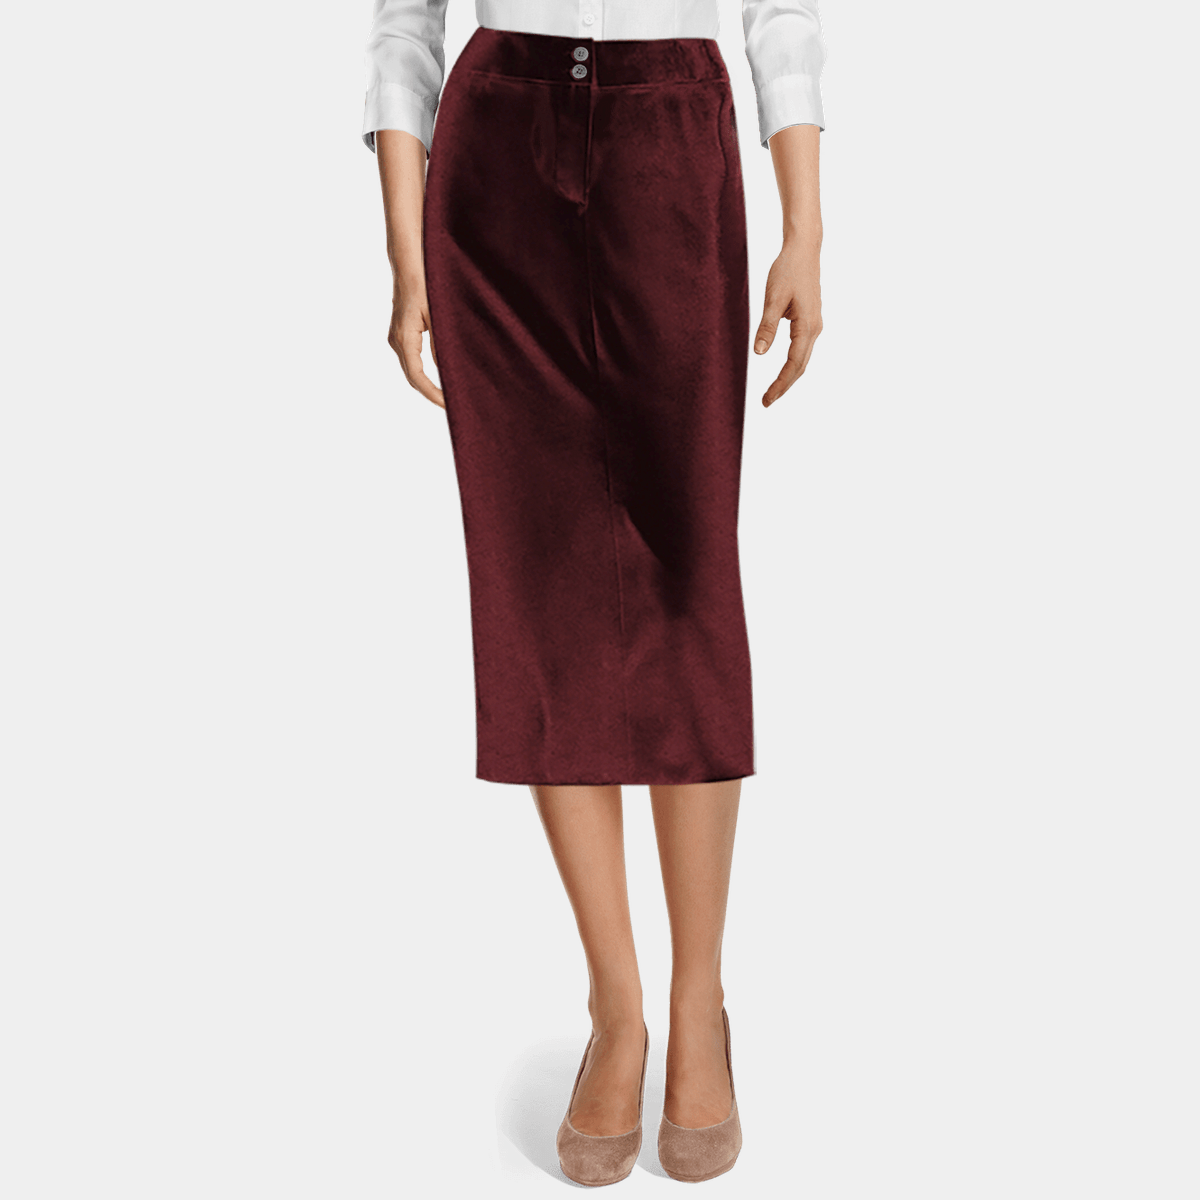 burgundy velvet pencil skirt